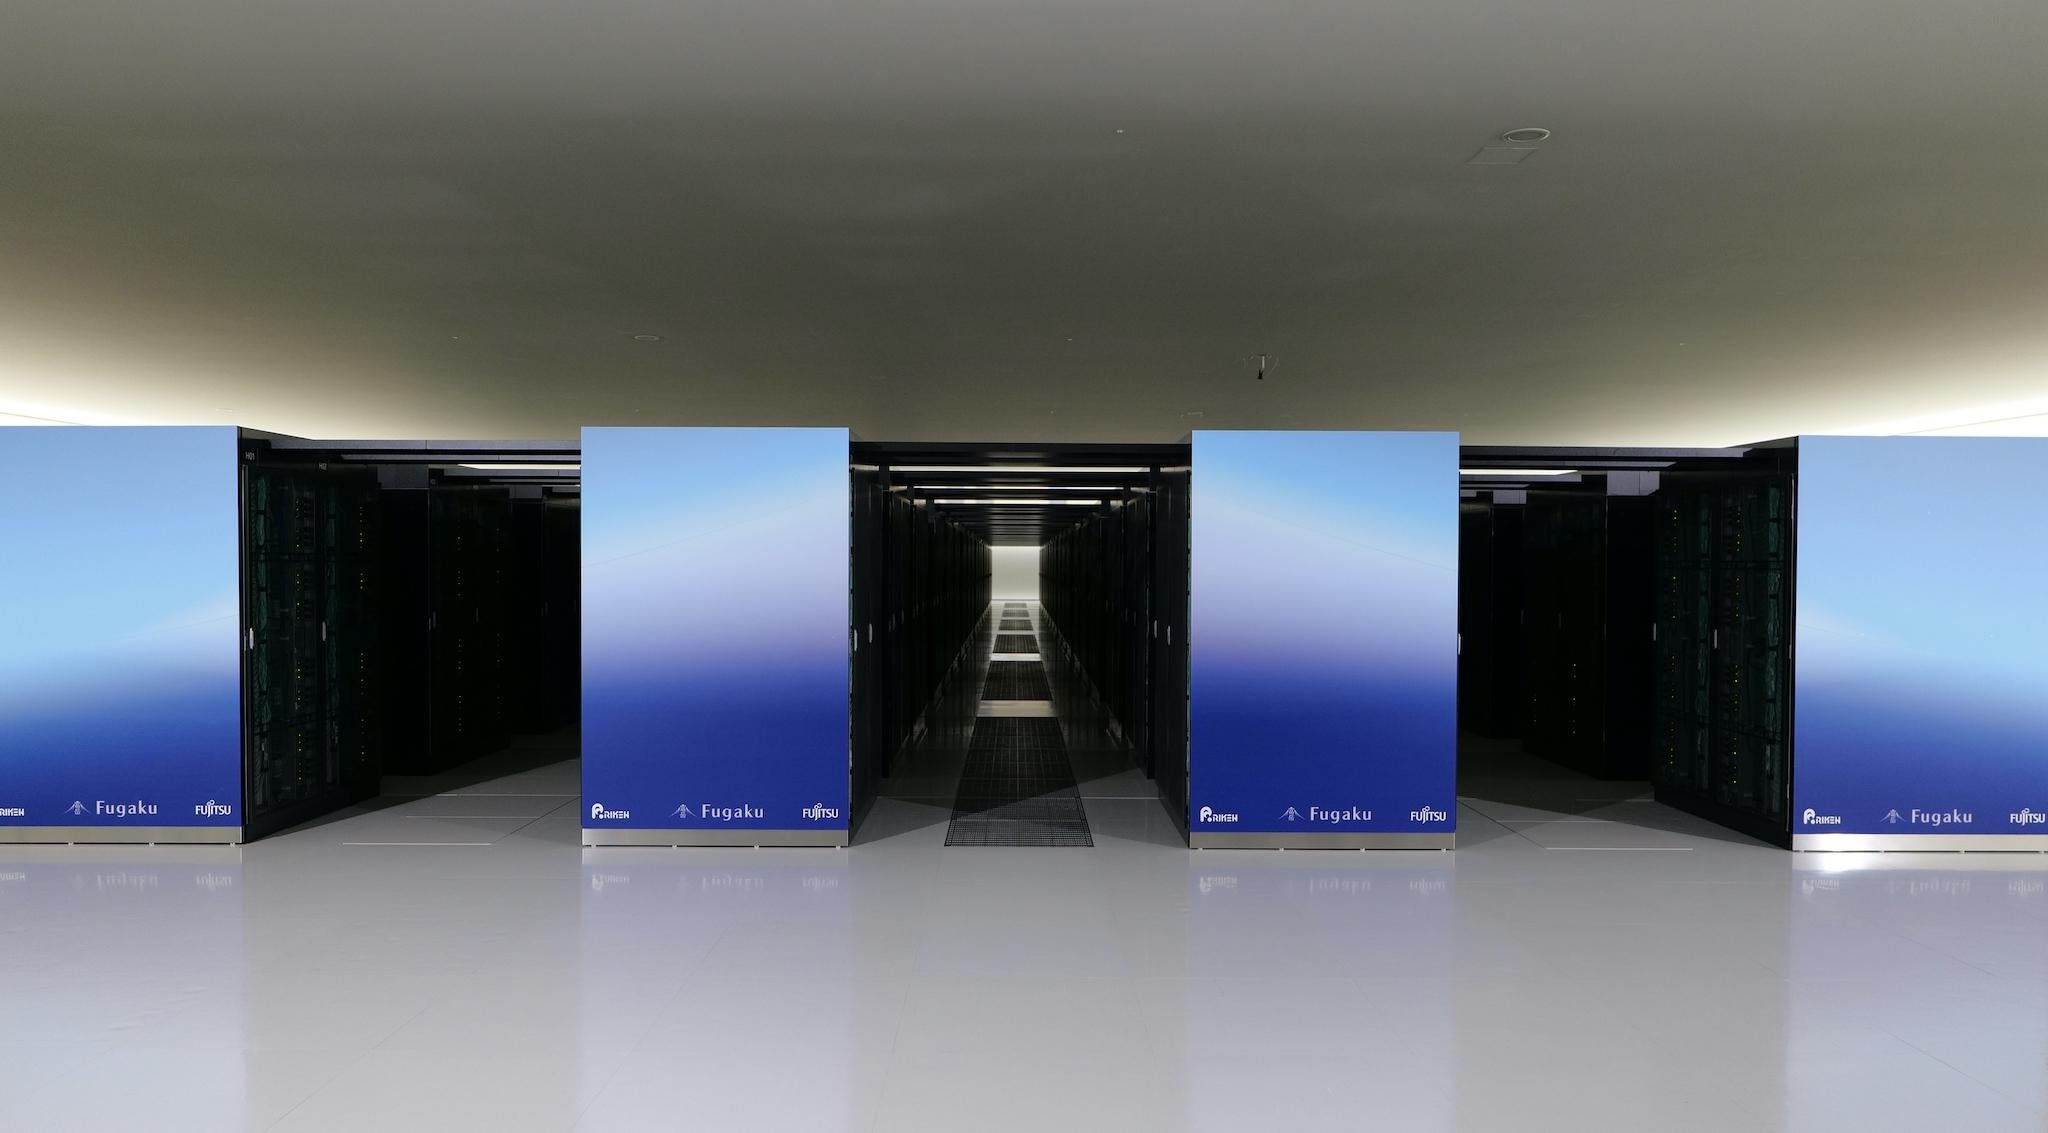 Milepæl Såkaldte købmand Fugaku remains world's fastest supercomputer in latest Top500 - DCD